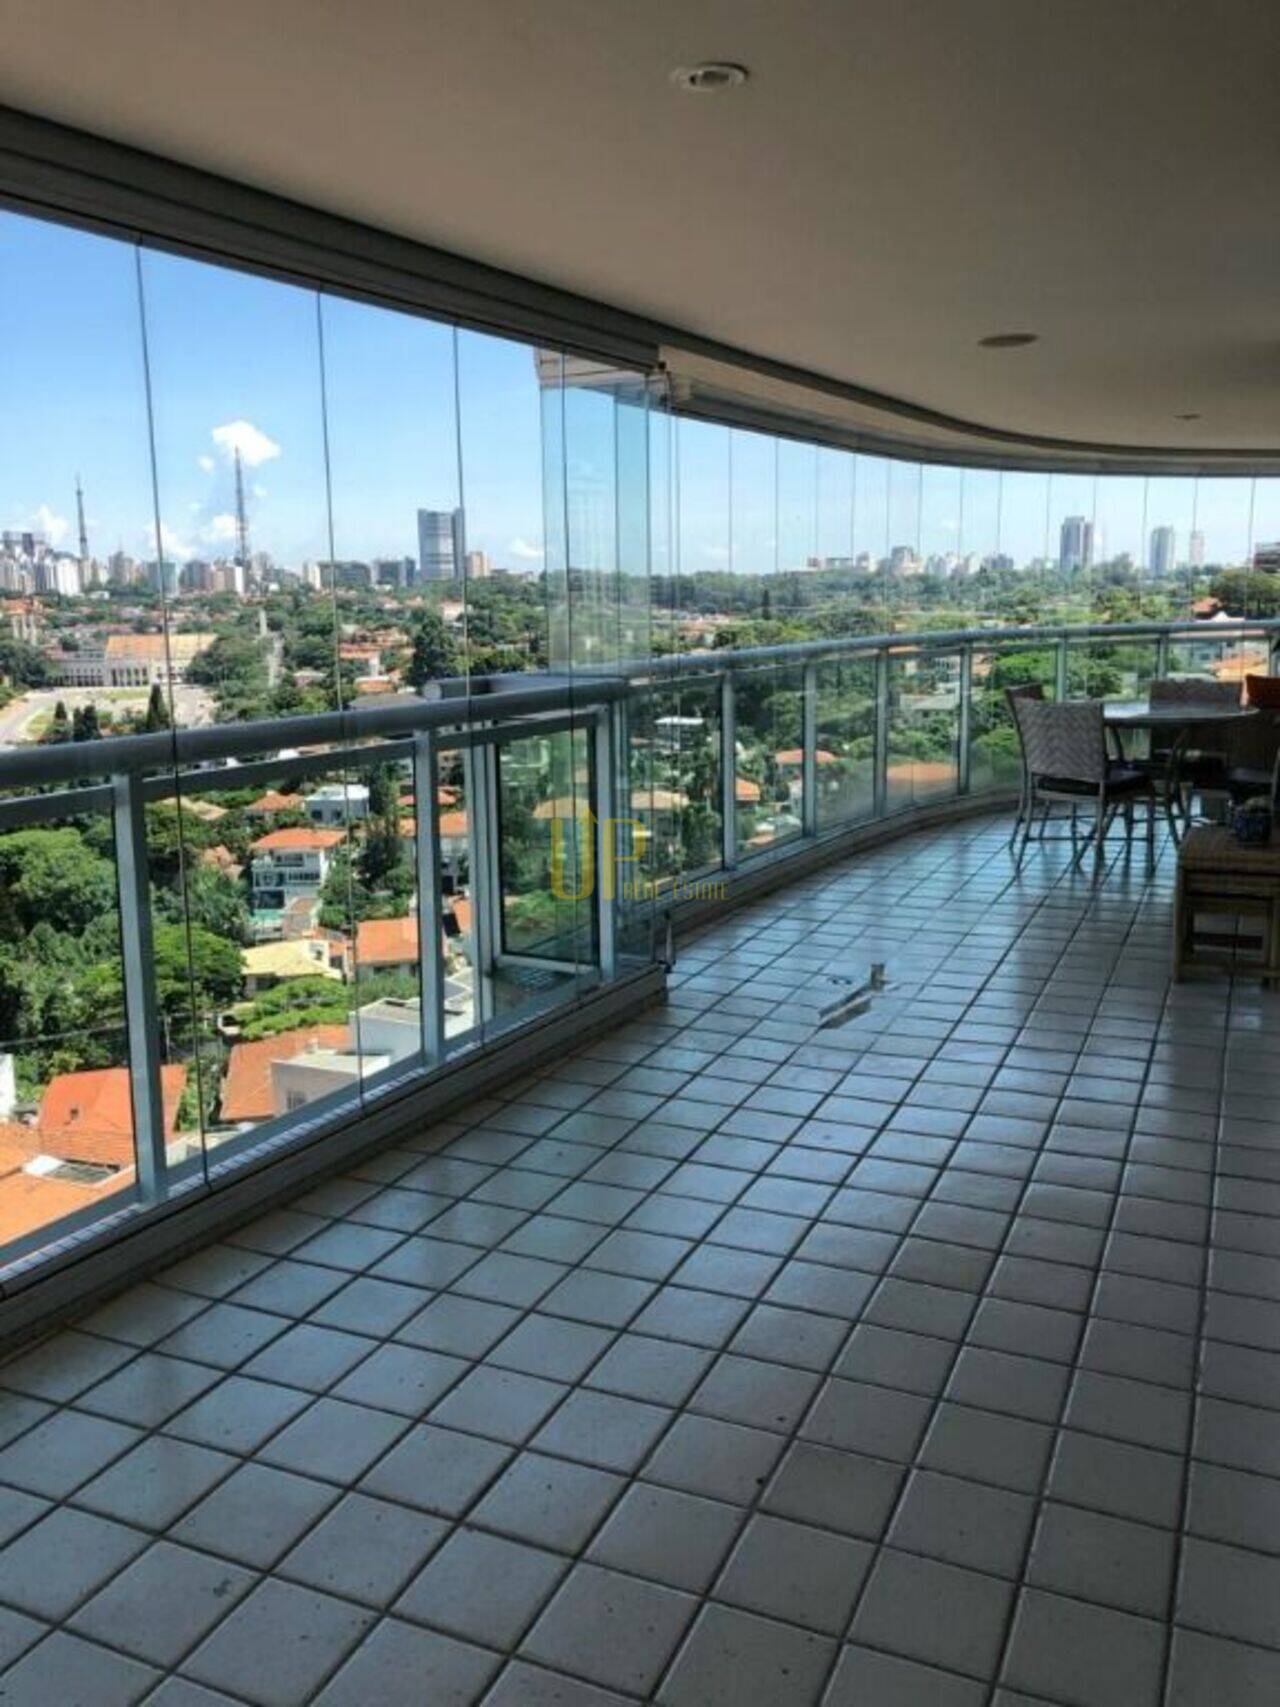 Cobertura com 3 dormitórios, 3 suites à venda, 847 m² por R$ 10.400.000 - Pacaembu - São Paulo/SP